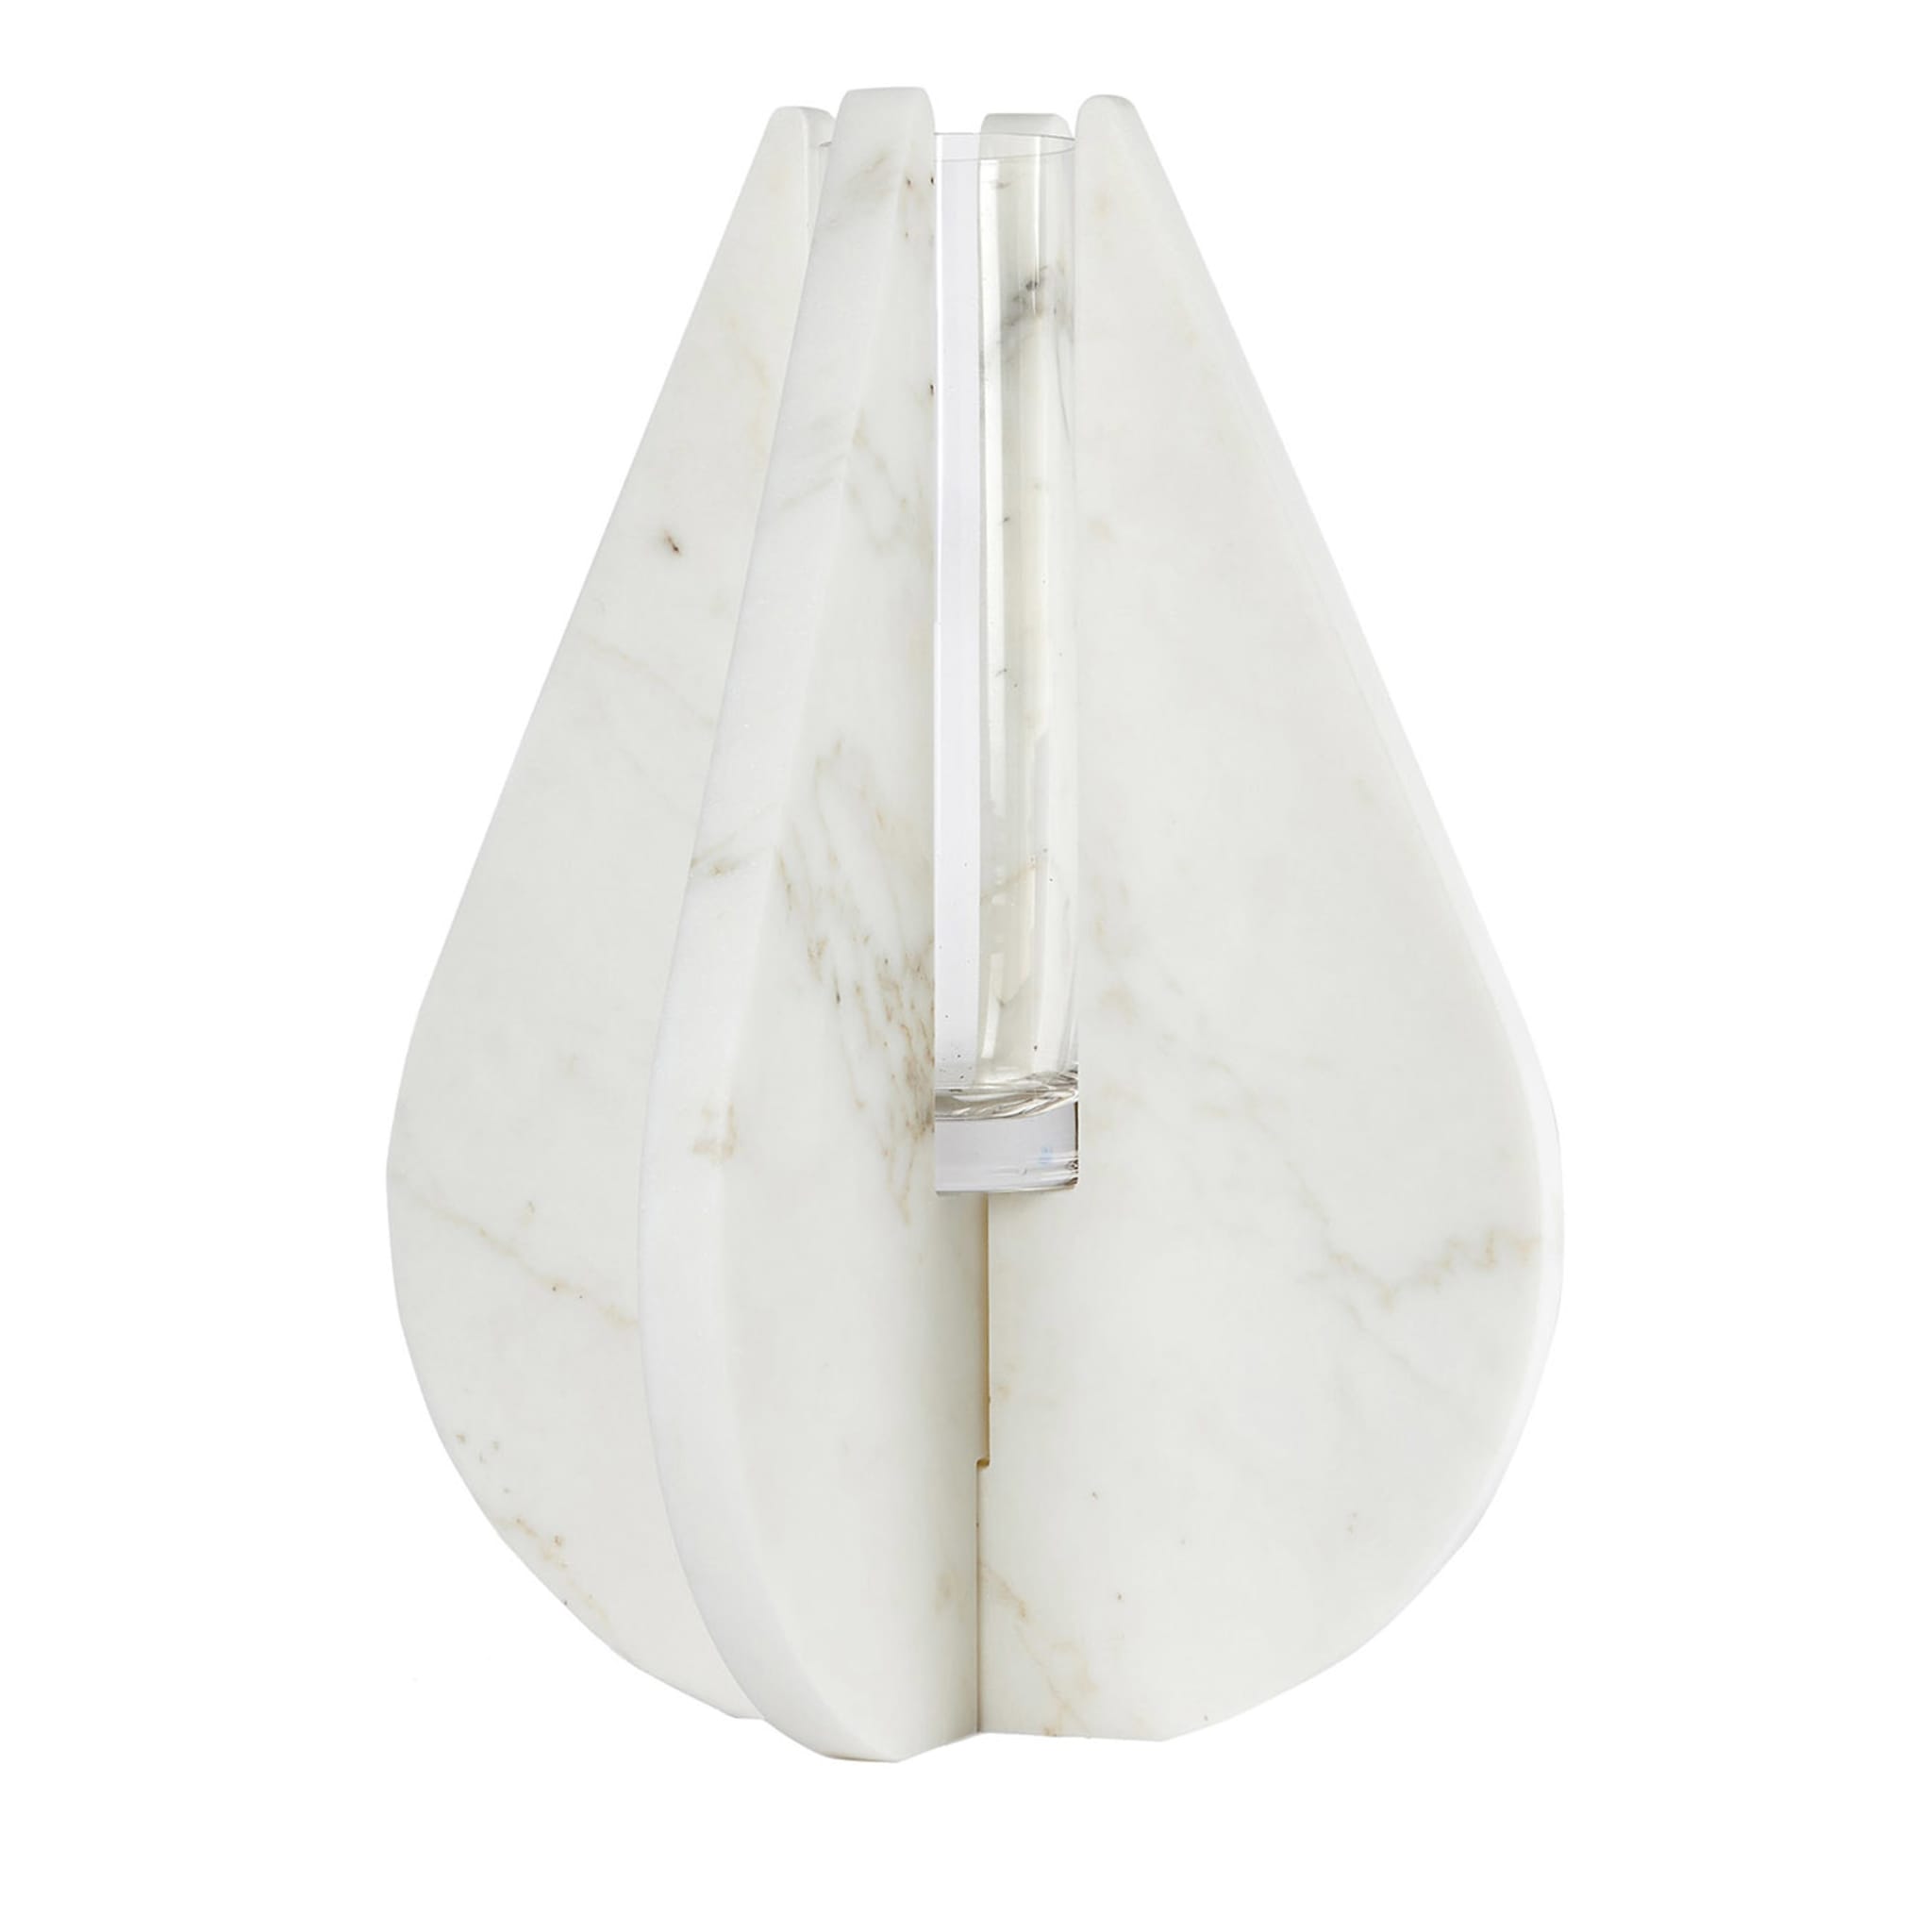 Vase en carrare blanc #3 d'Alessandra Grasso - Vue principale